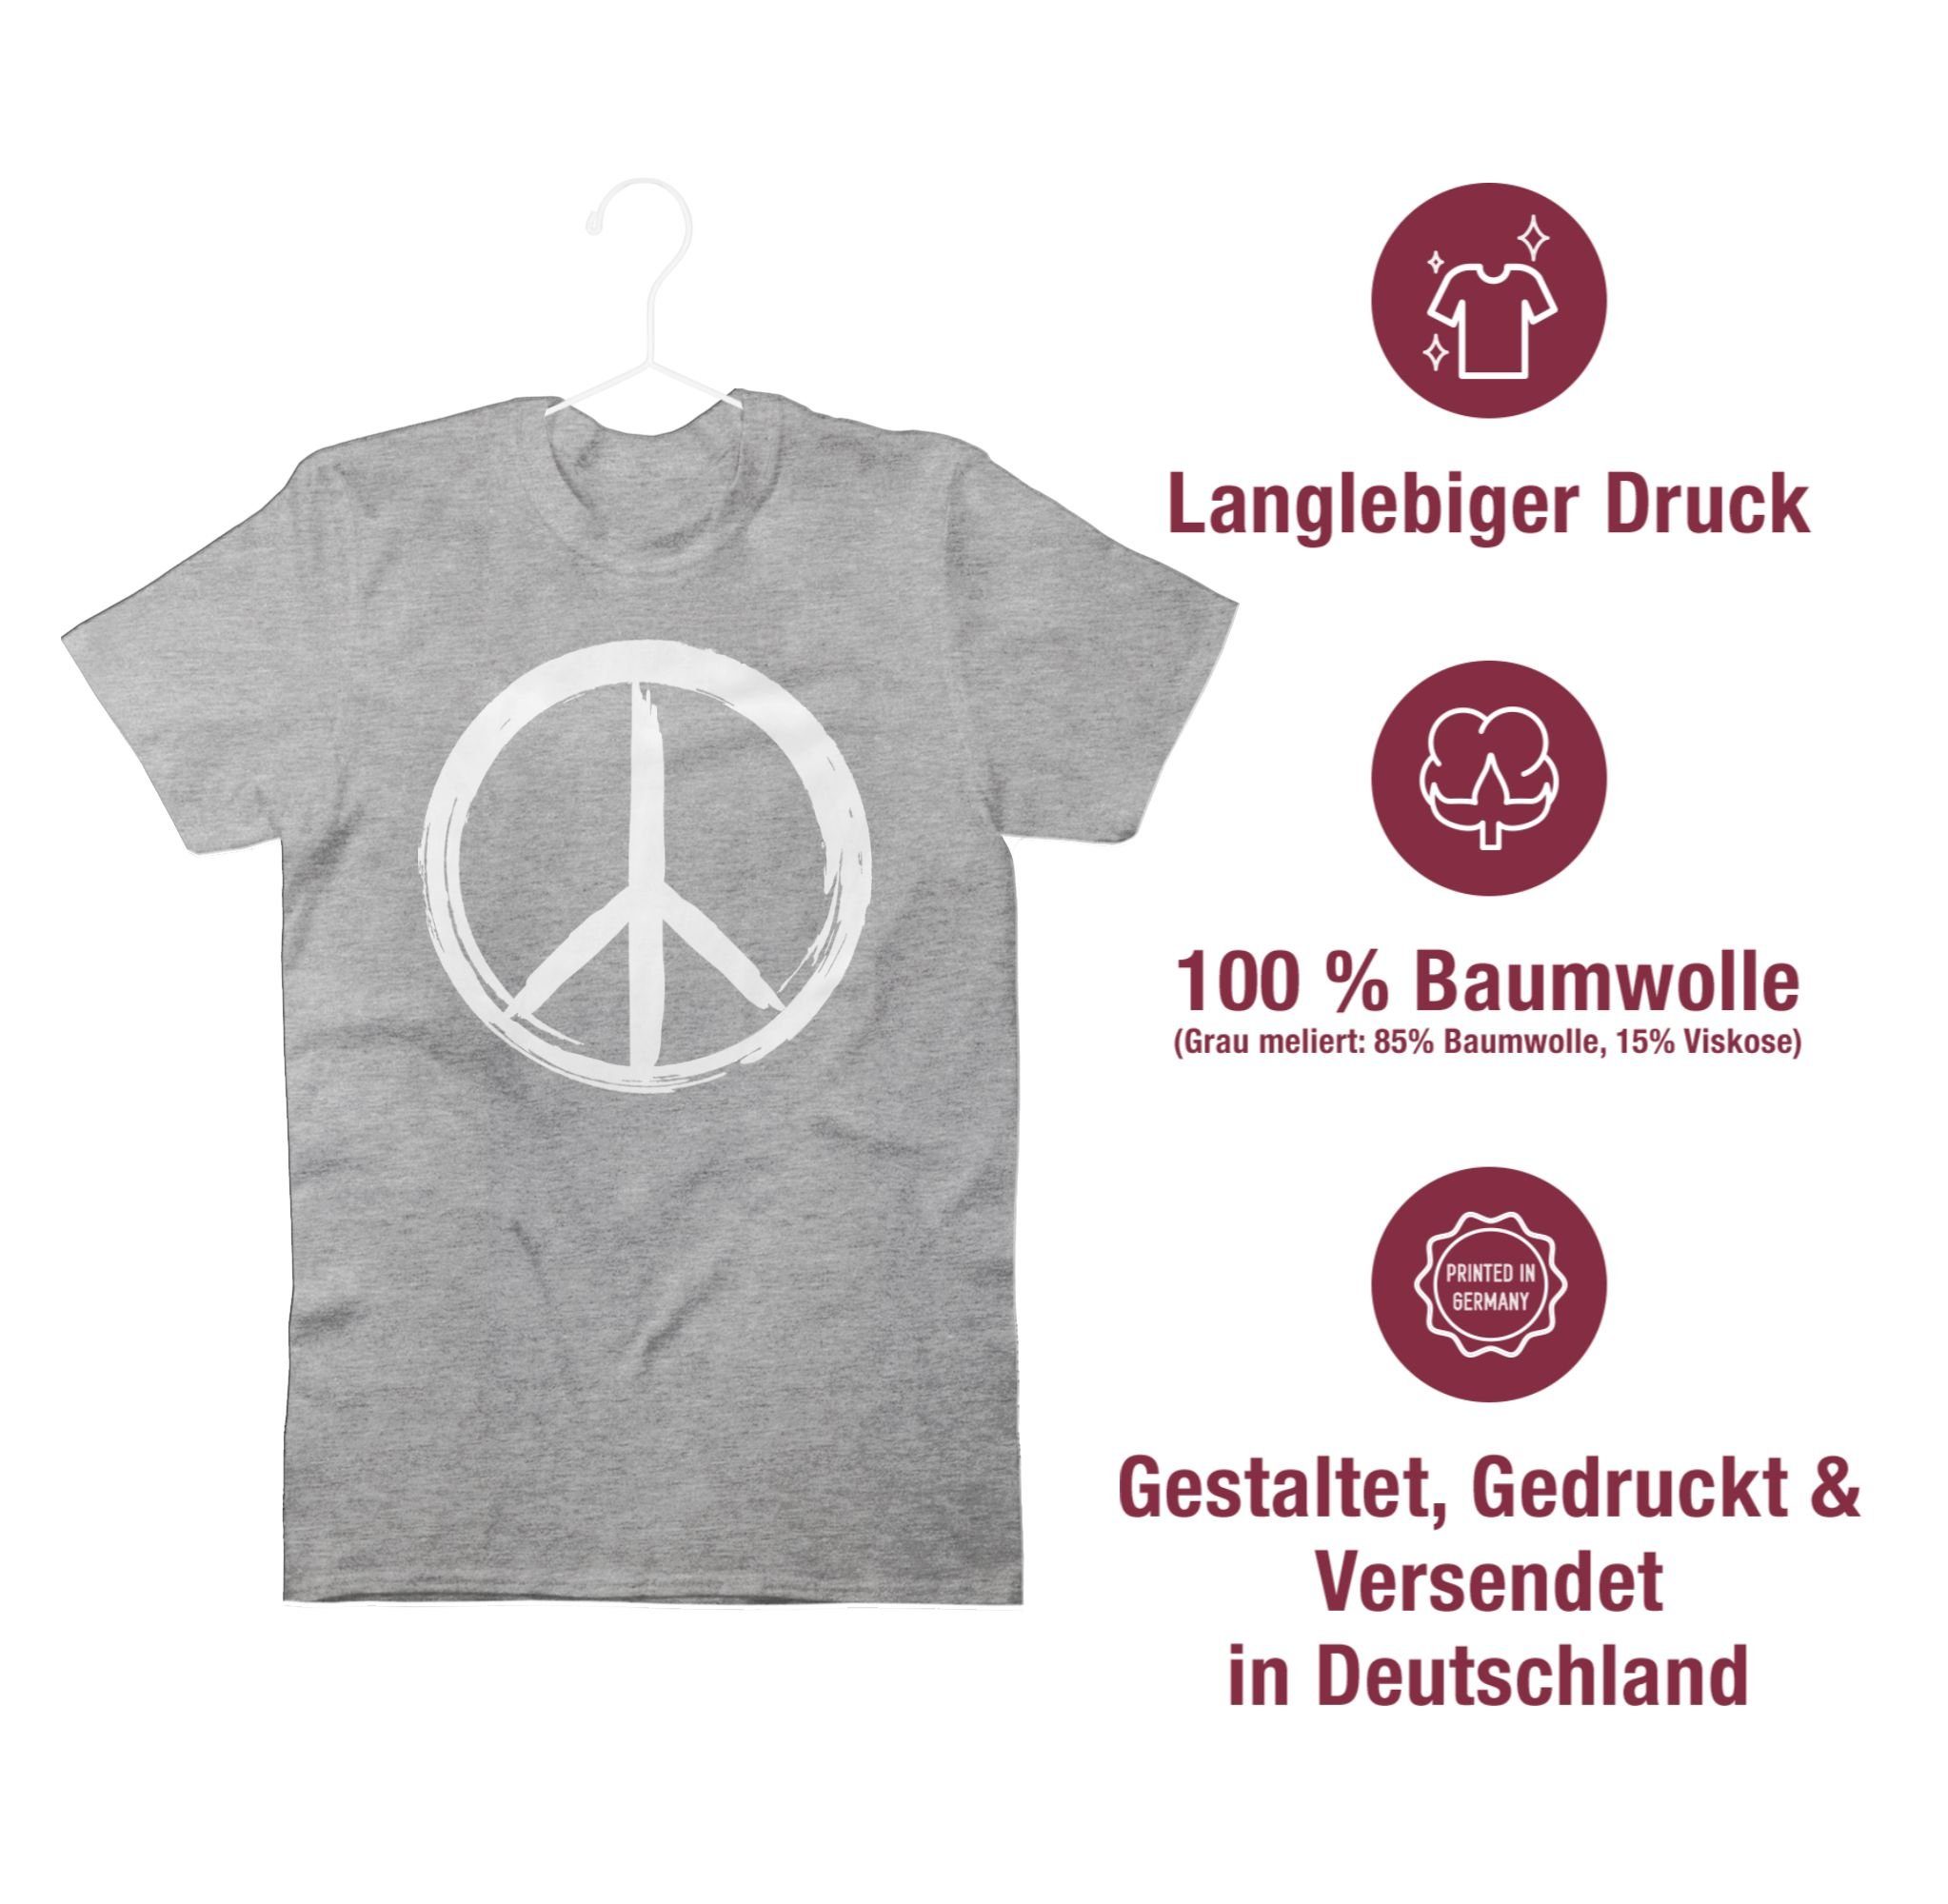 T-Shirt Grau weiß Sprüche - Peace Zeichen Pinsel Shirtracer Optik meliert 03 Statement